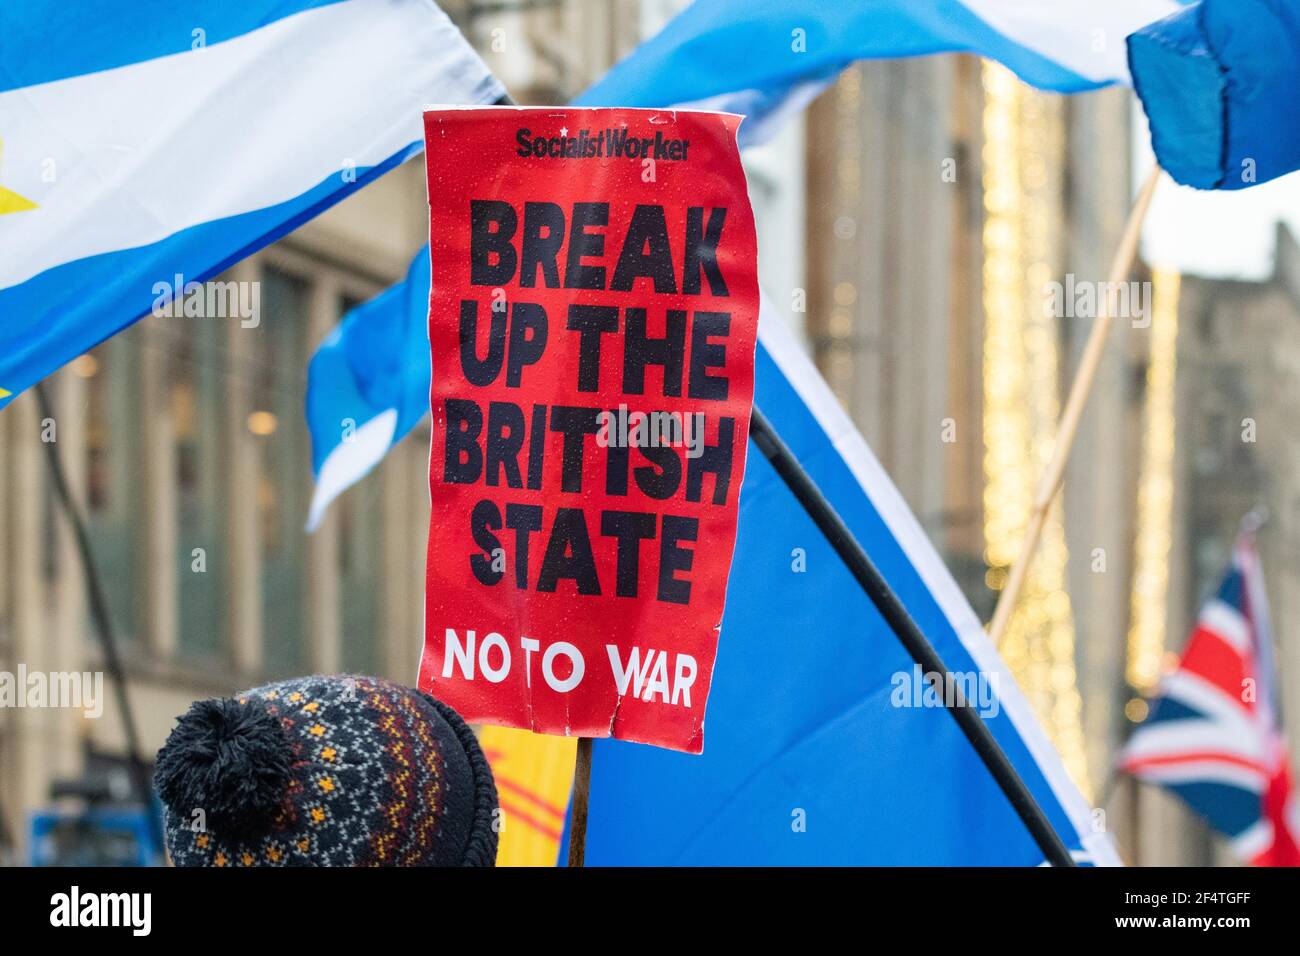 Romper el Estado británico no a la guerra - el trabajador socialista aplacard en la marcha de la independencia escocesa, Glasgow, Escocia, Reino Unido Foto de stock